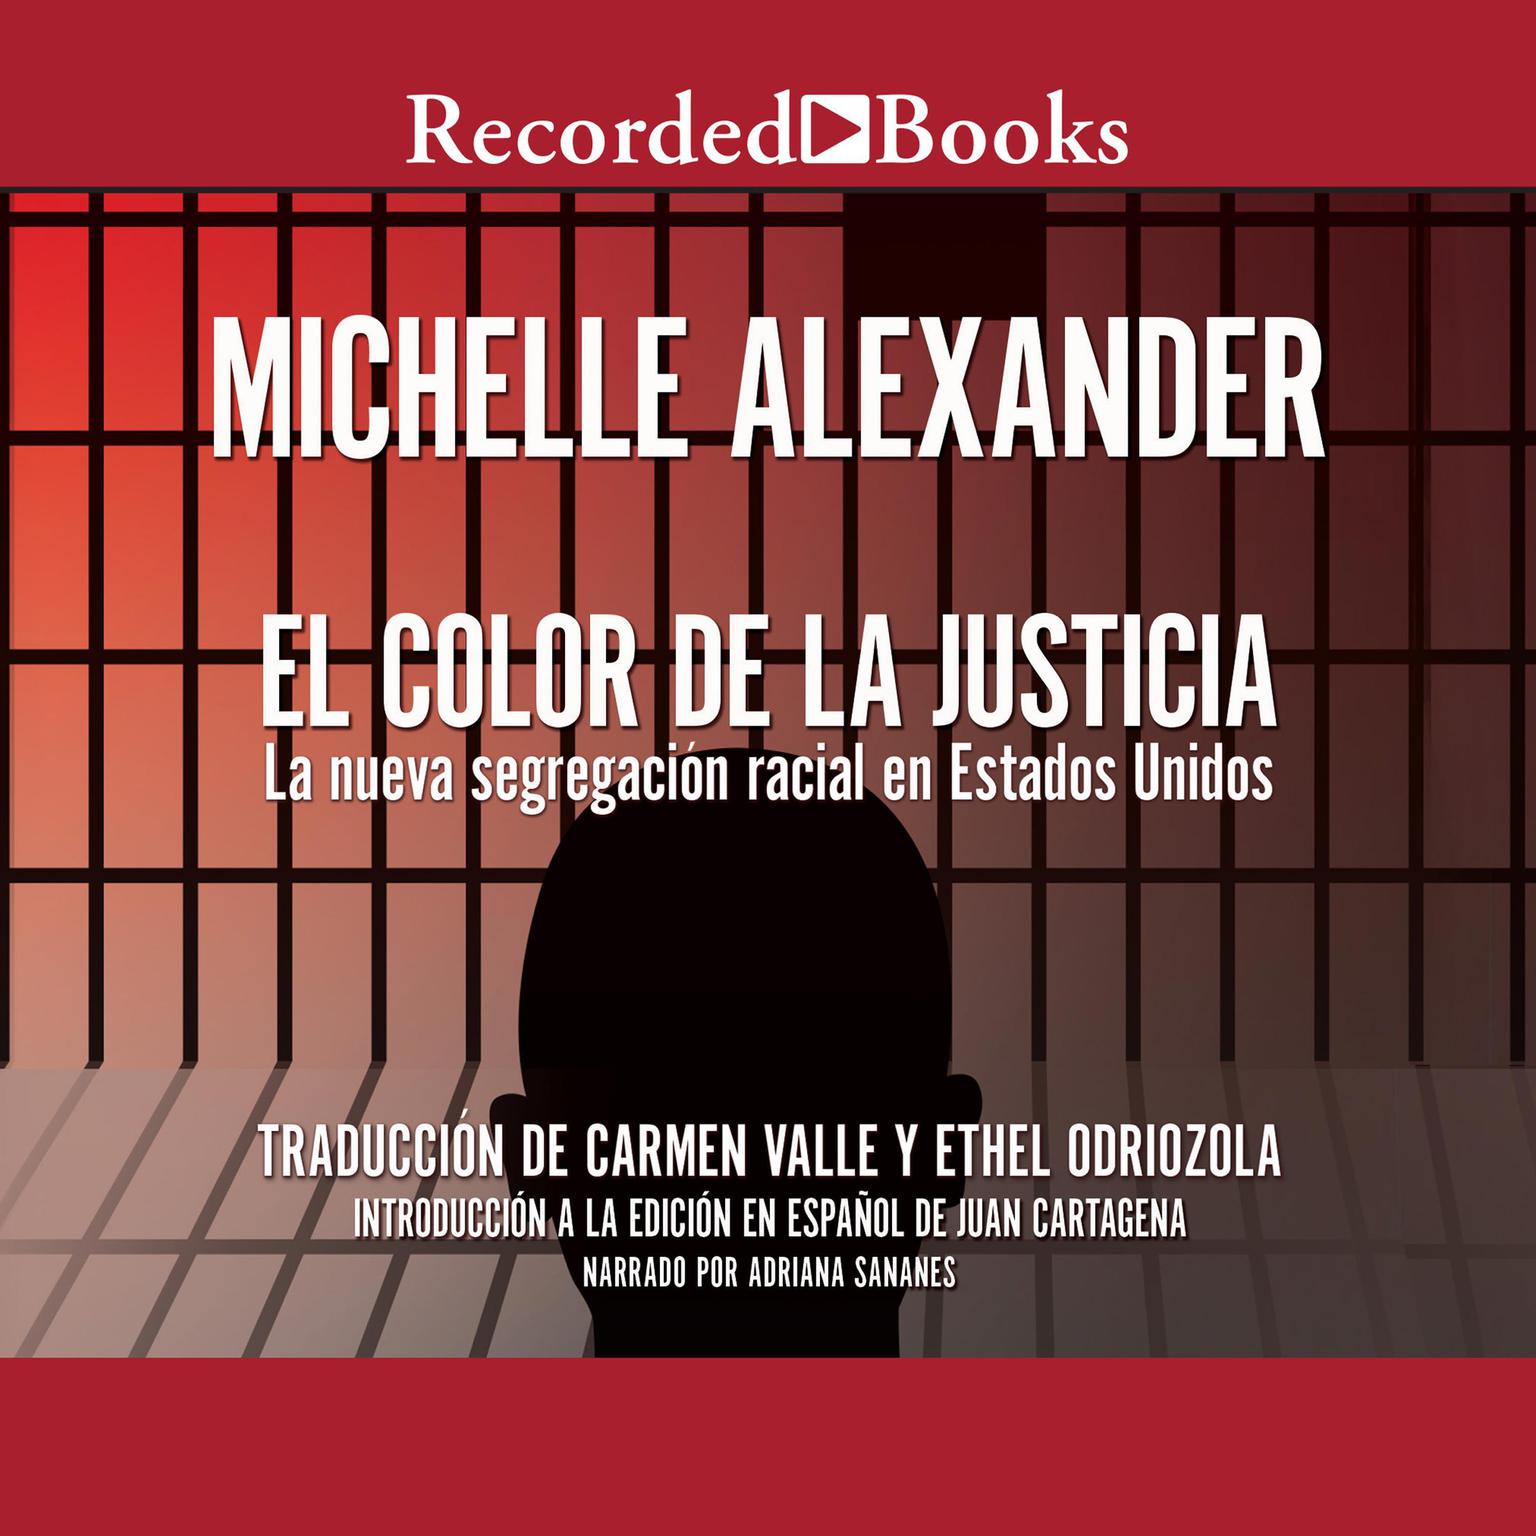 El Color de la Justicia (The Color of Justice): La nueva segregacion racial en Estados Unidos Audiobook, by Michelle Alexander